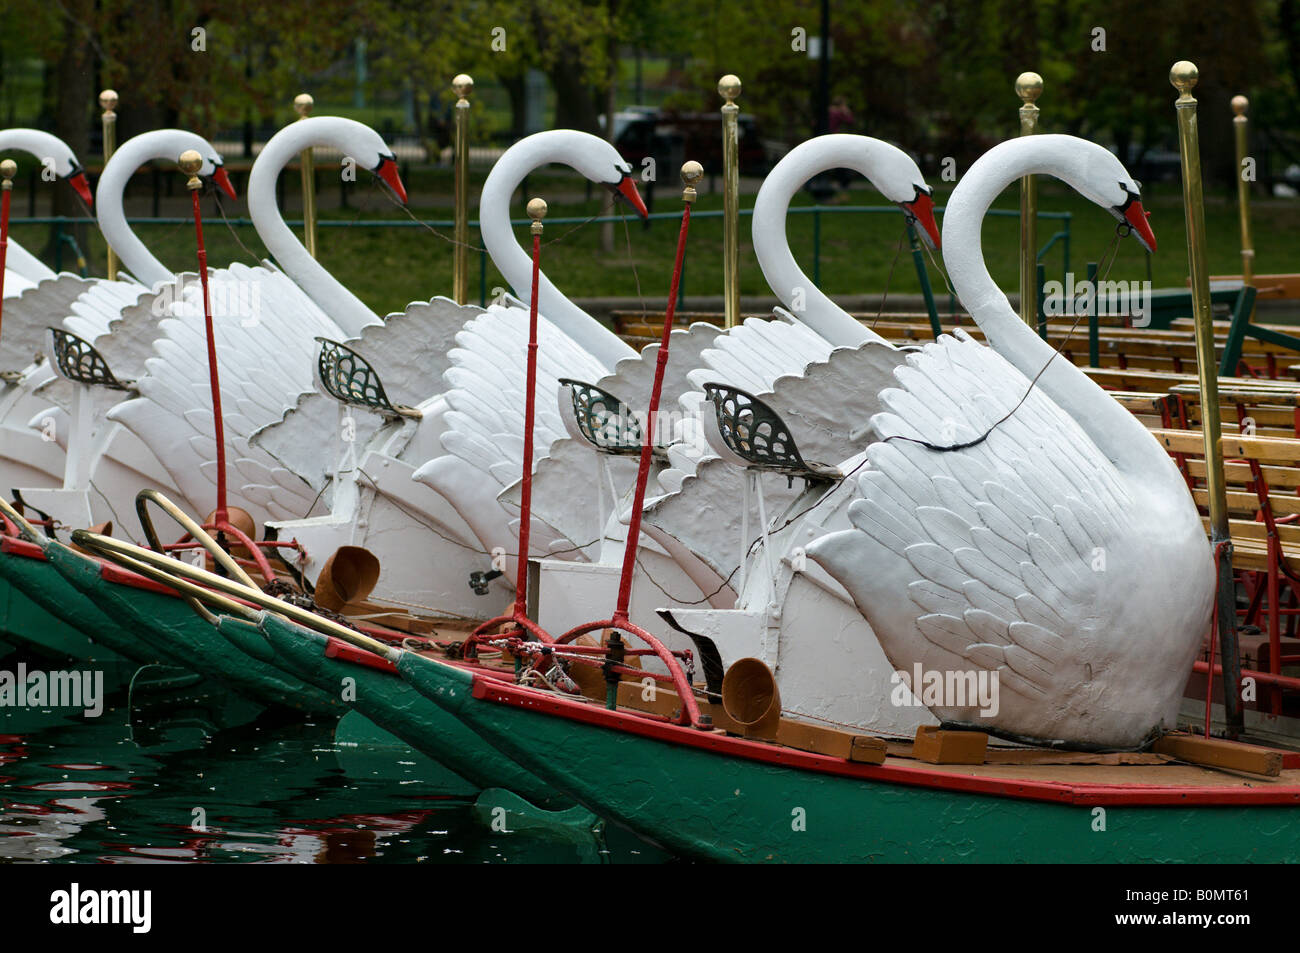 La célèbre swan boats dans les jardins publics de Boston ma. Banque D'Images